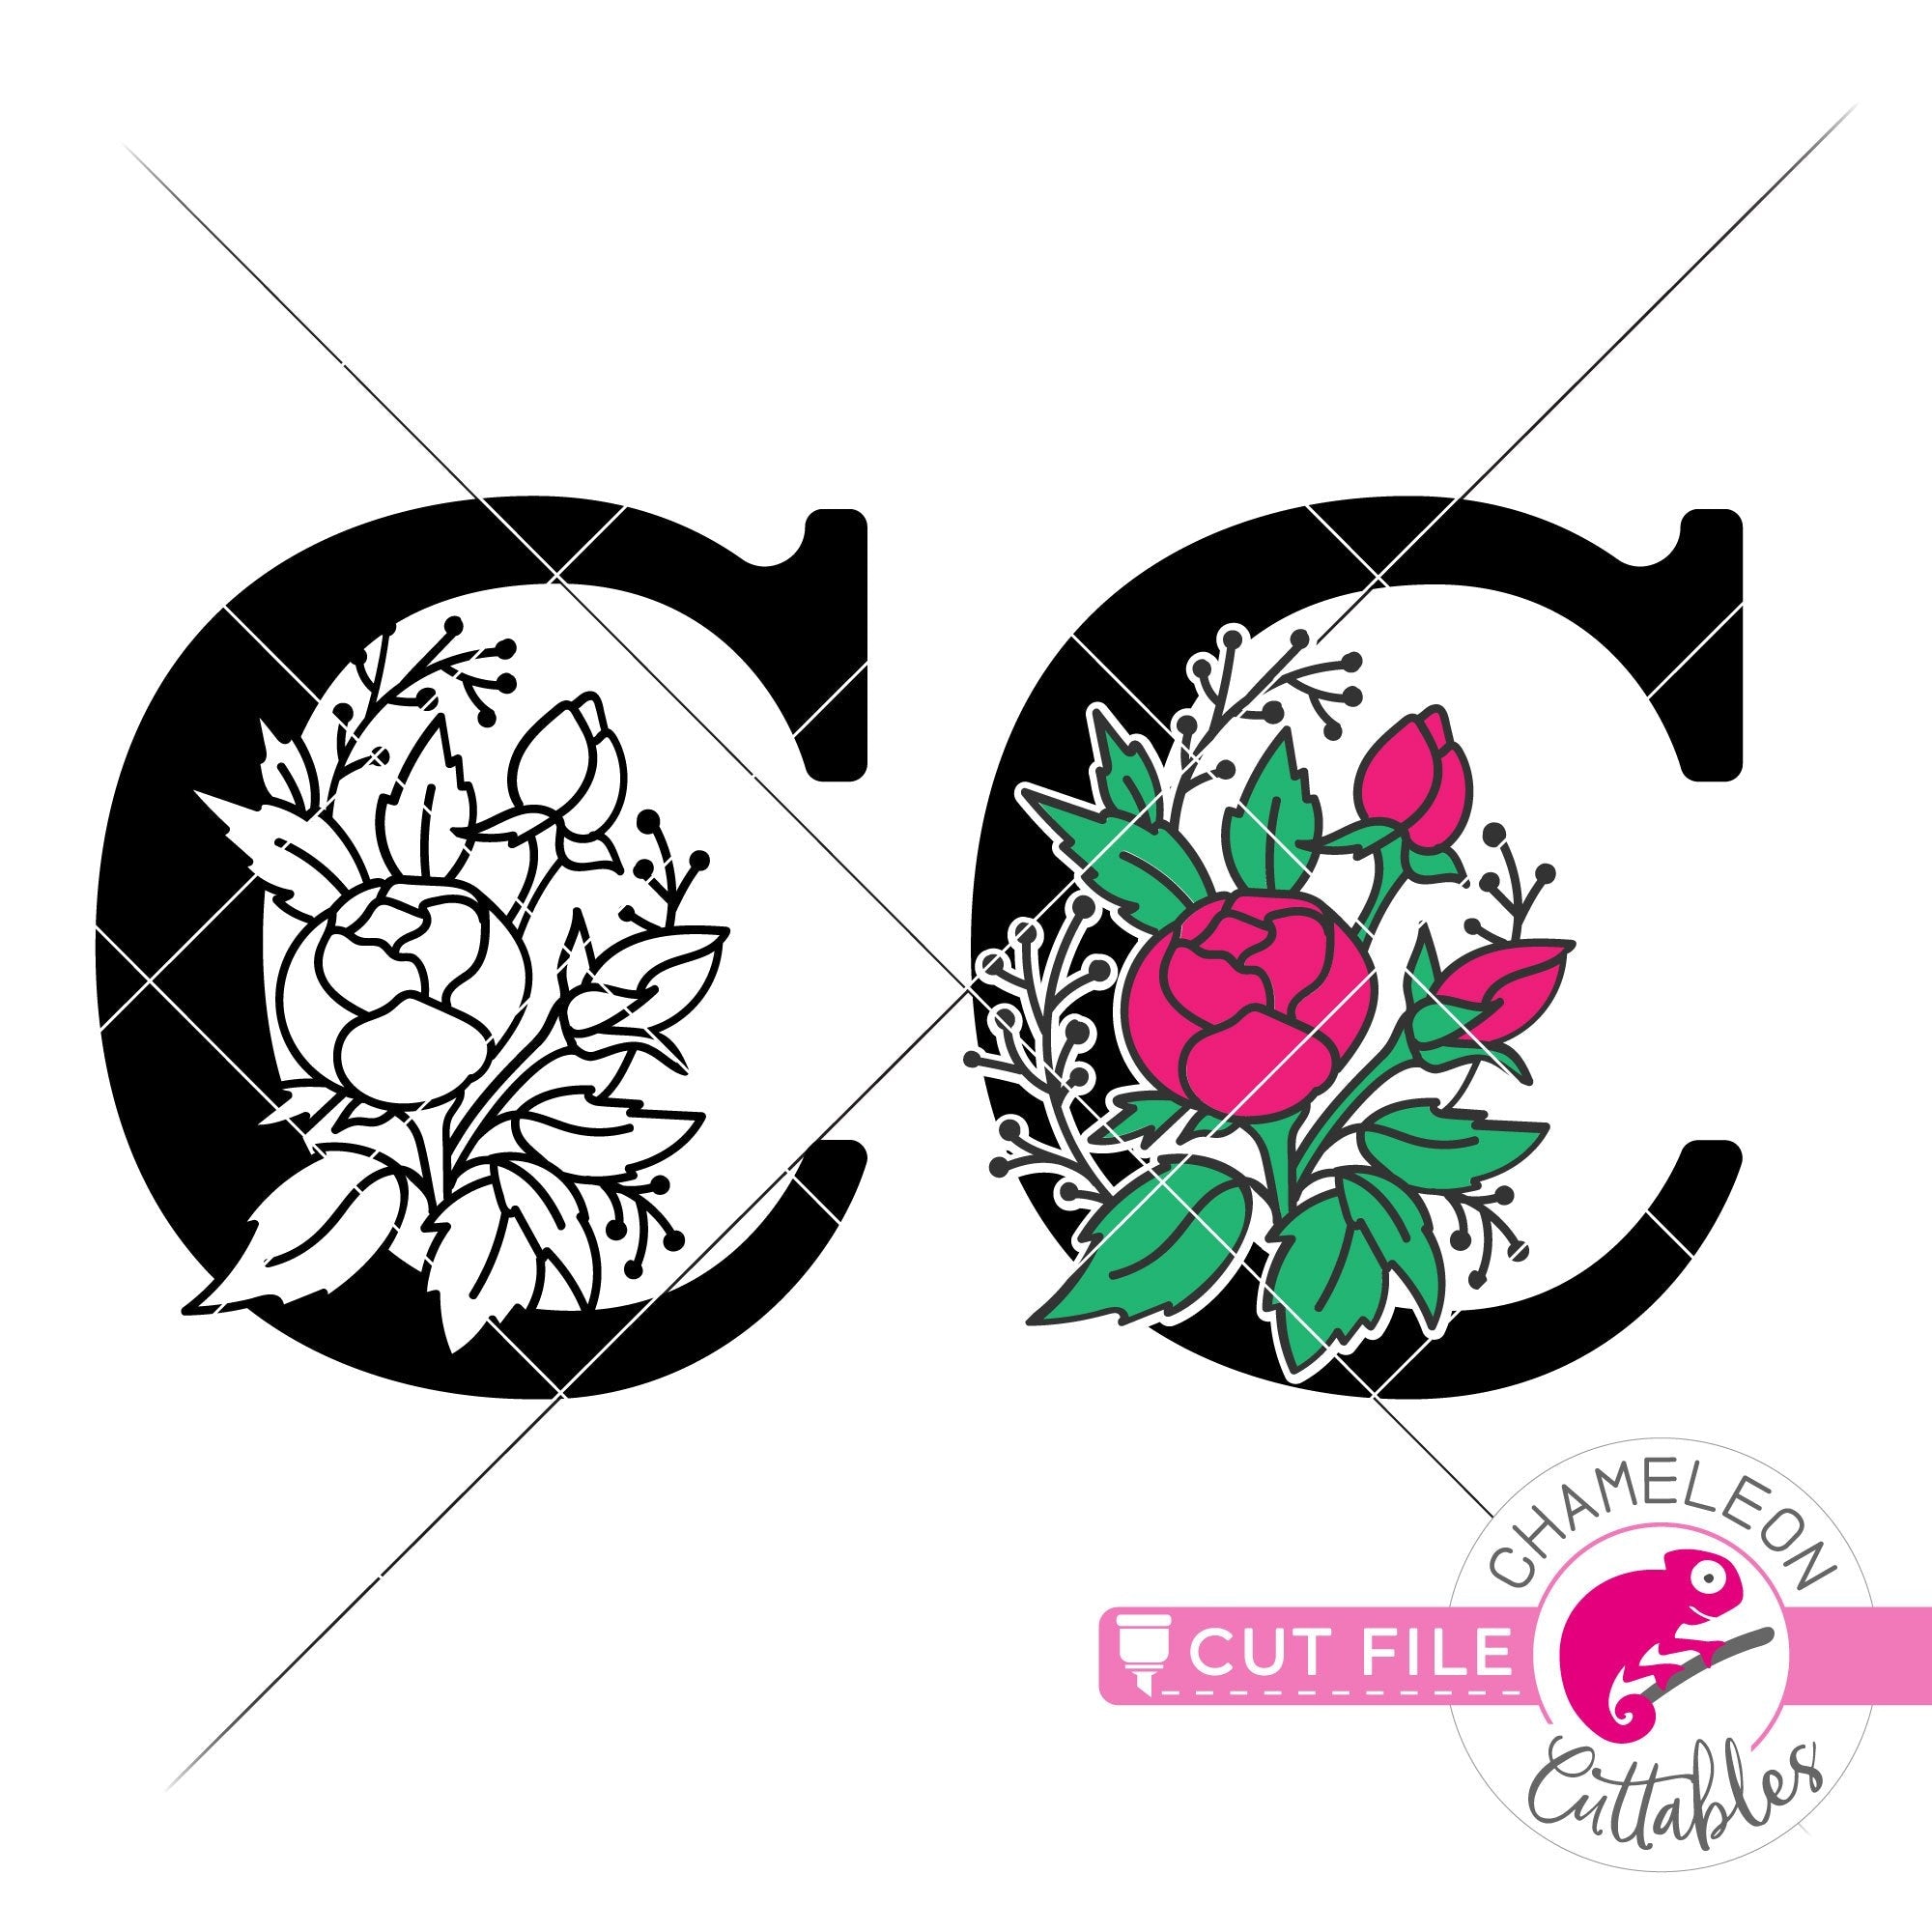 Download C Floral Monogram Letter With Flowers Svg Png Dxf Eps Jpeg Chameleon Cuttables Llc Chameleon Cuttables Llc